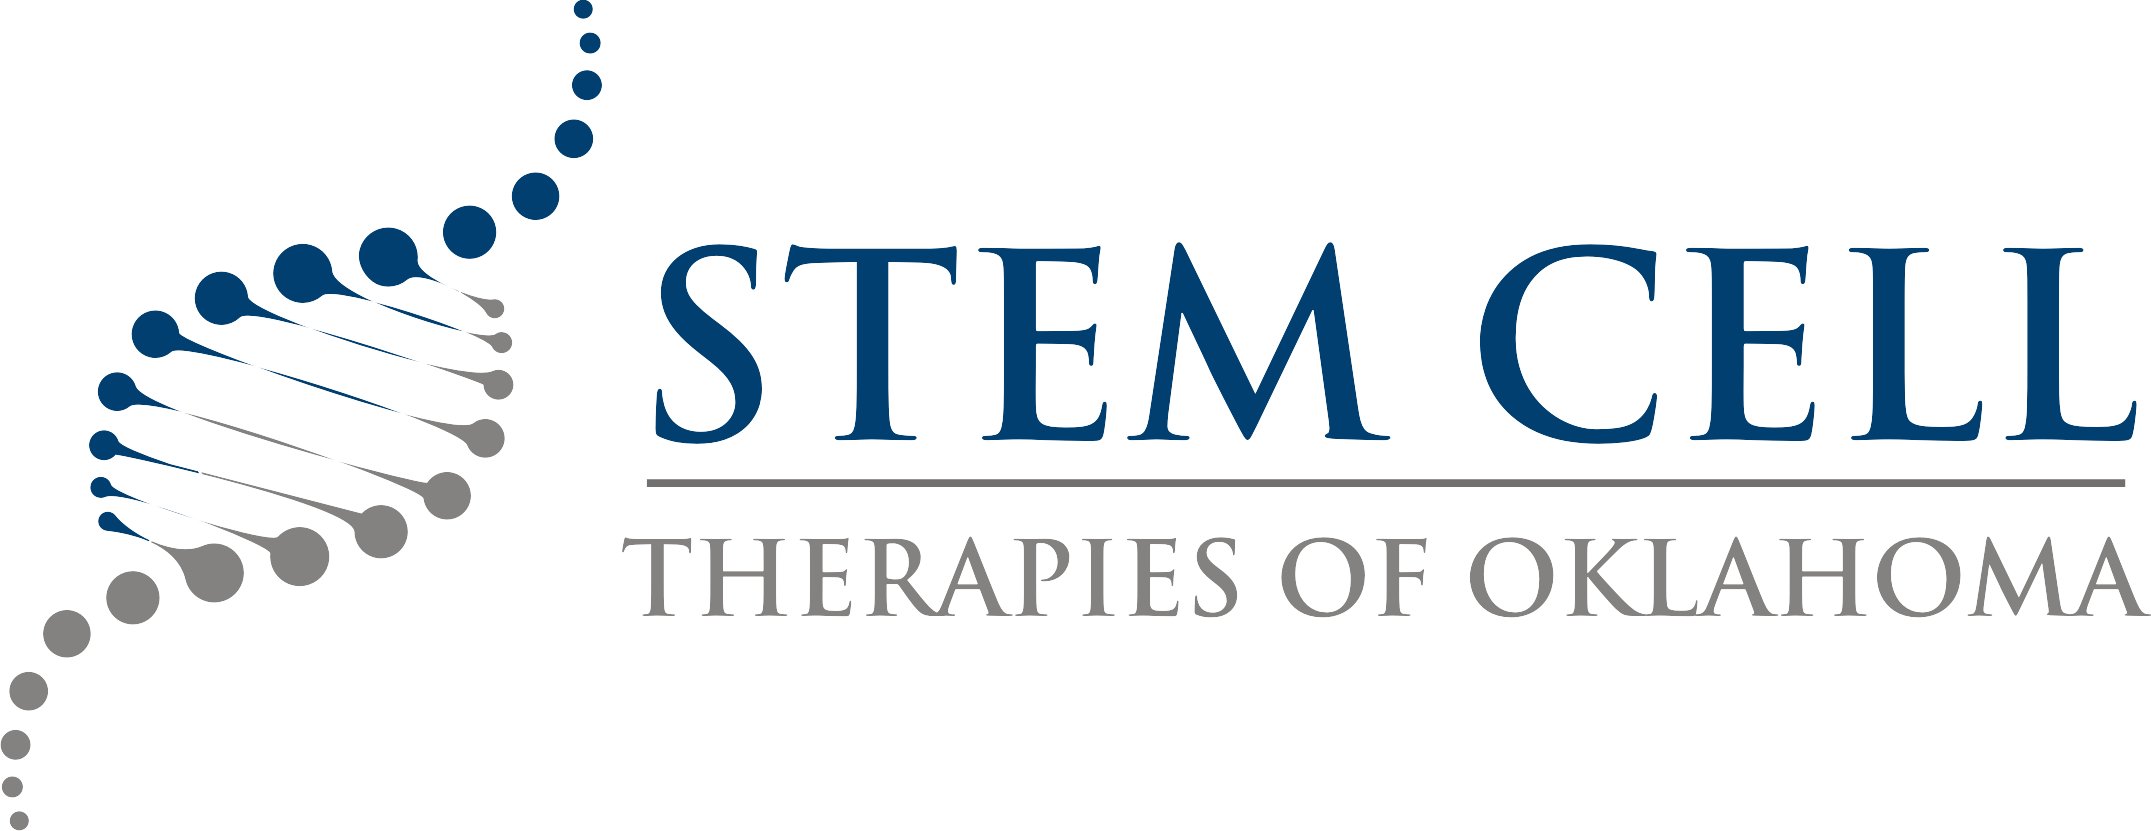 Stem Cell Therapies of Oklahoma logo